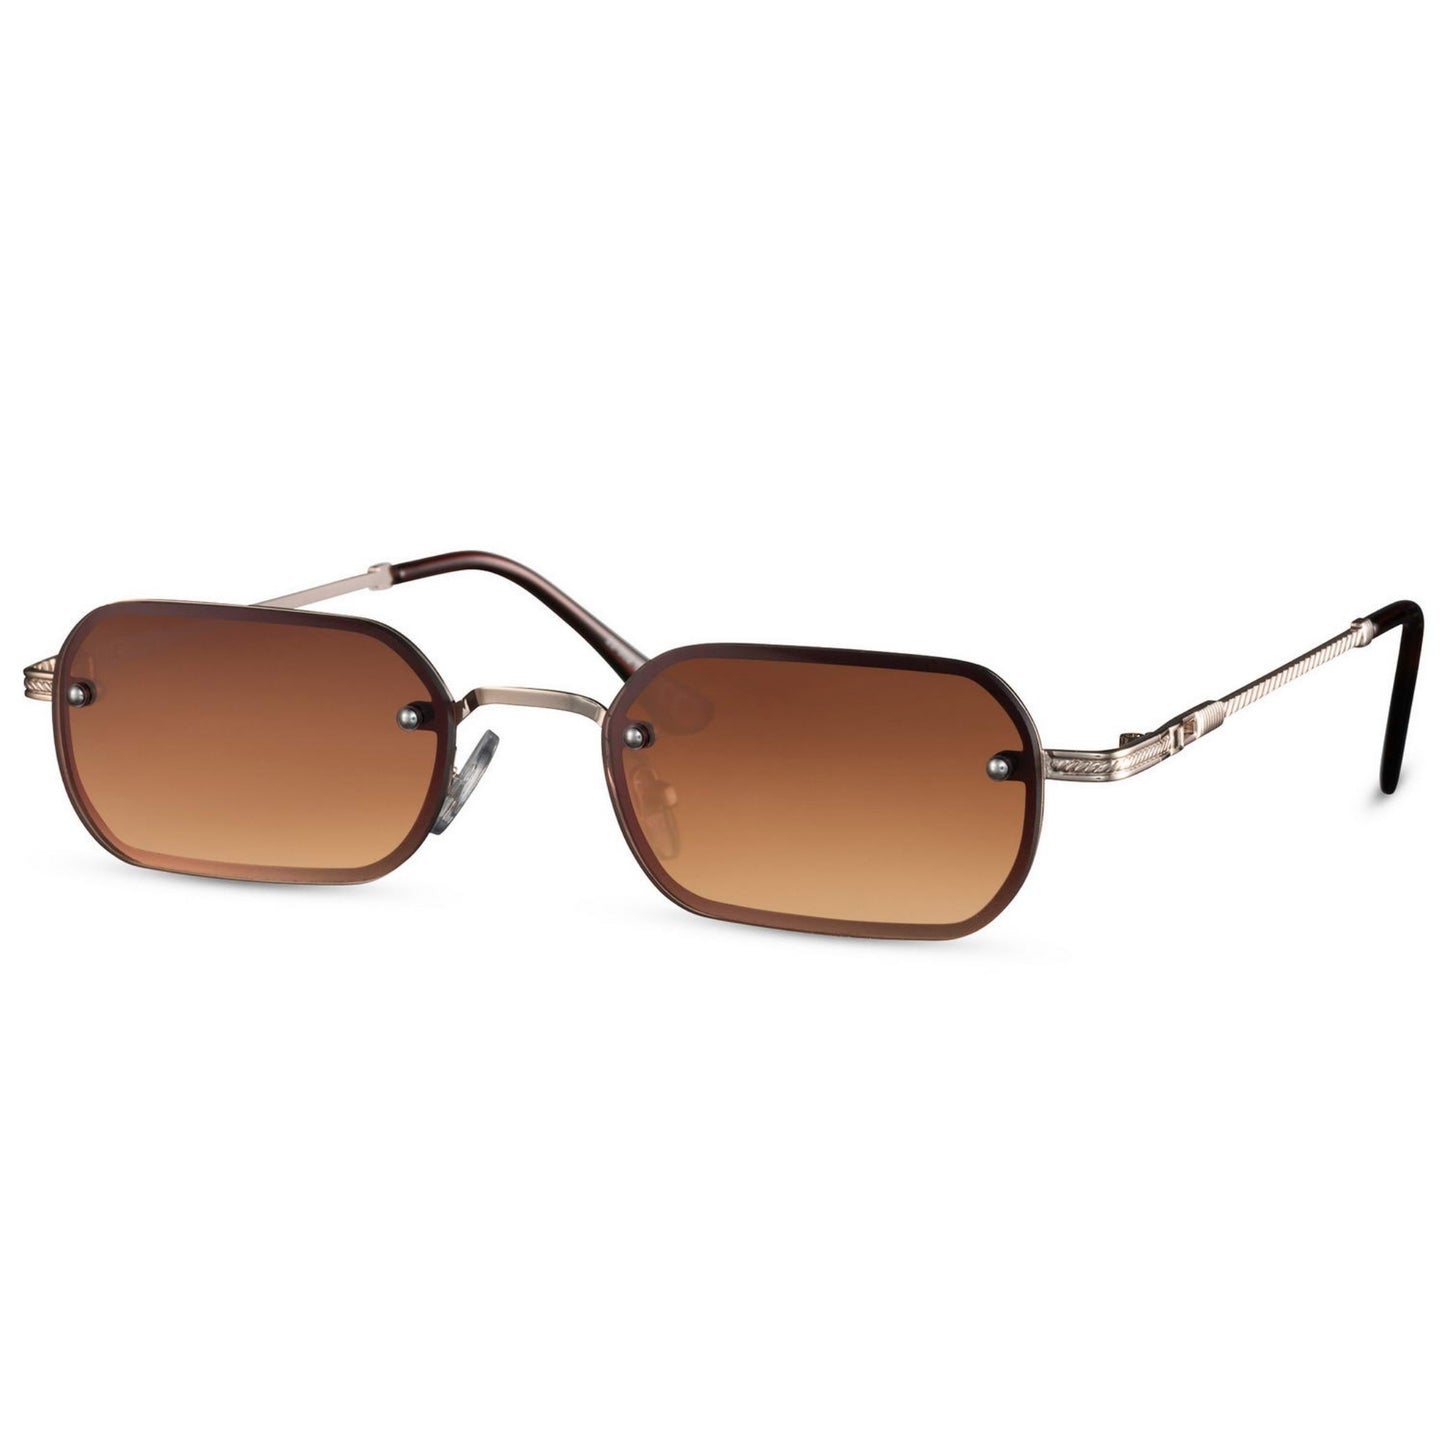 Ορθογώνια Γυαλιά ηλίου New York από την Exposure Sunglasses με προστασία UV400 με χρυσό σκελετό και καφέ φακό.Πλαινή όψη.